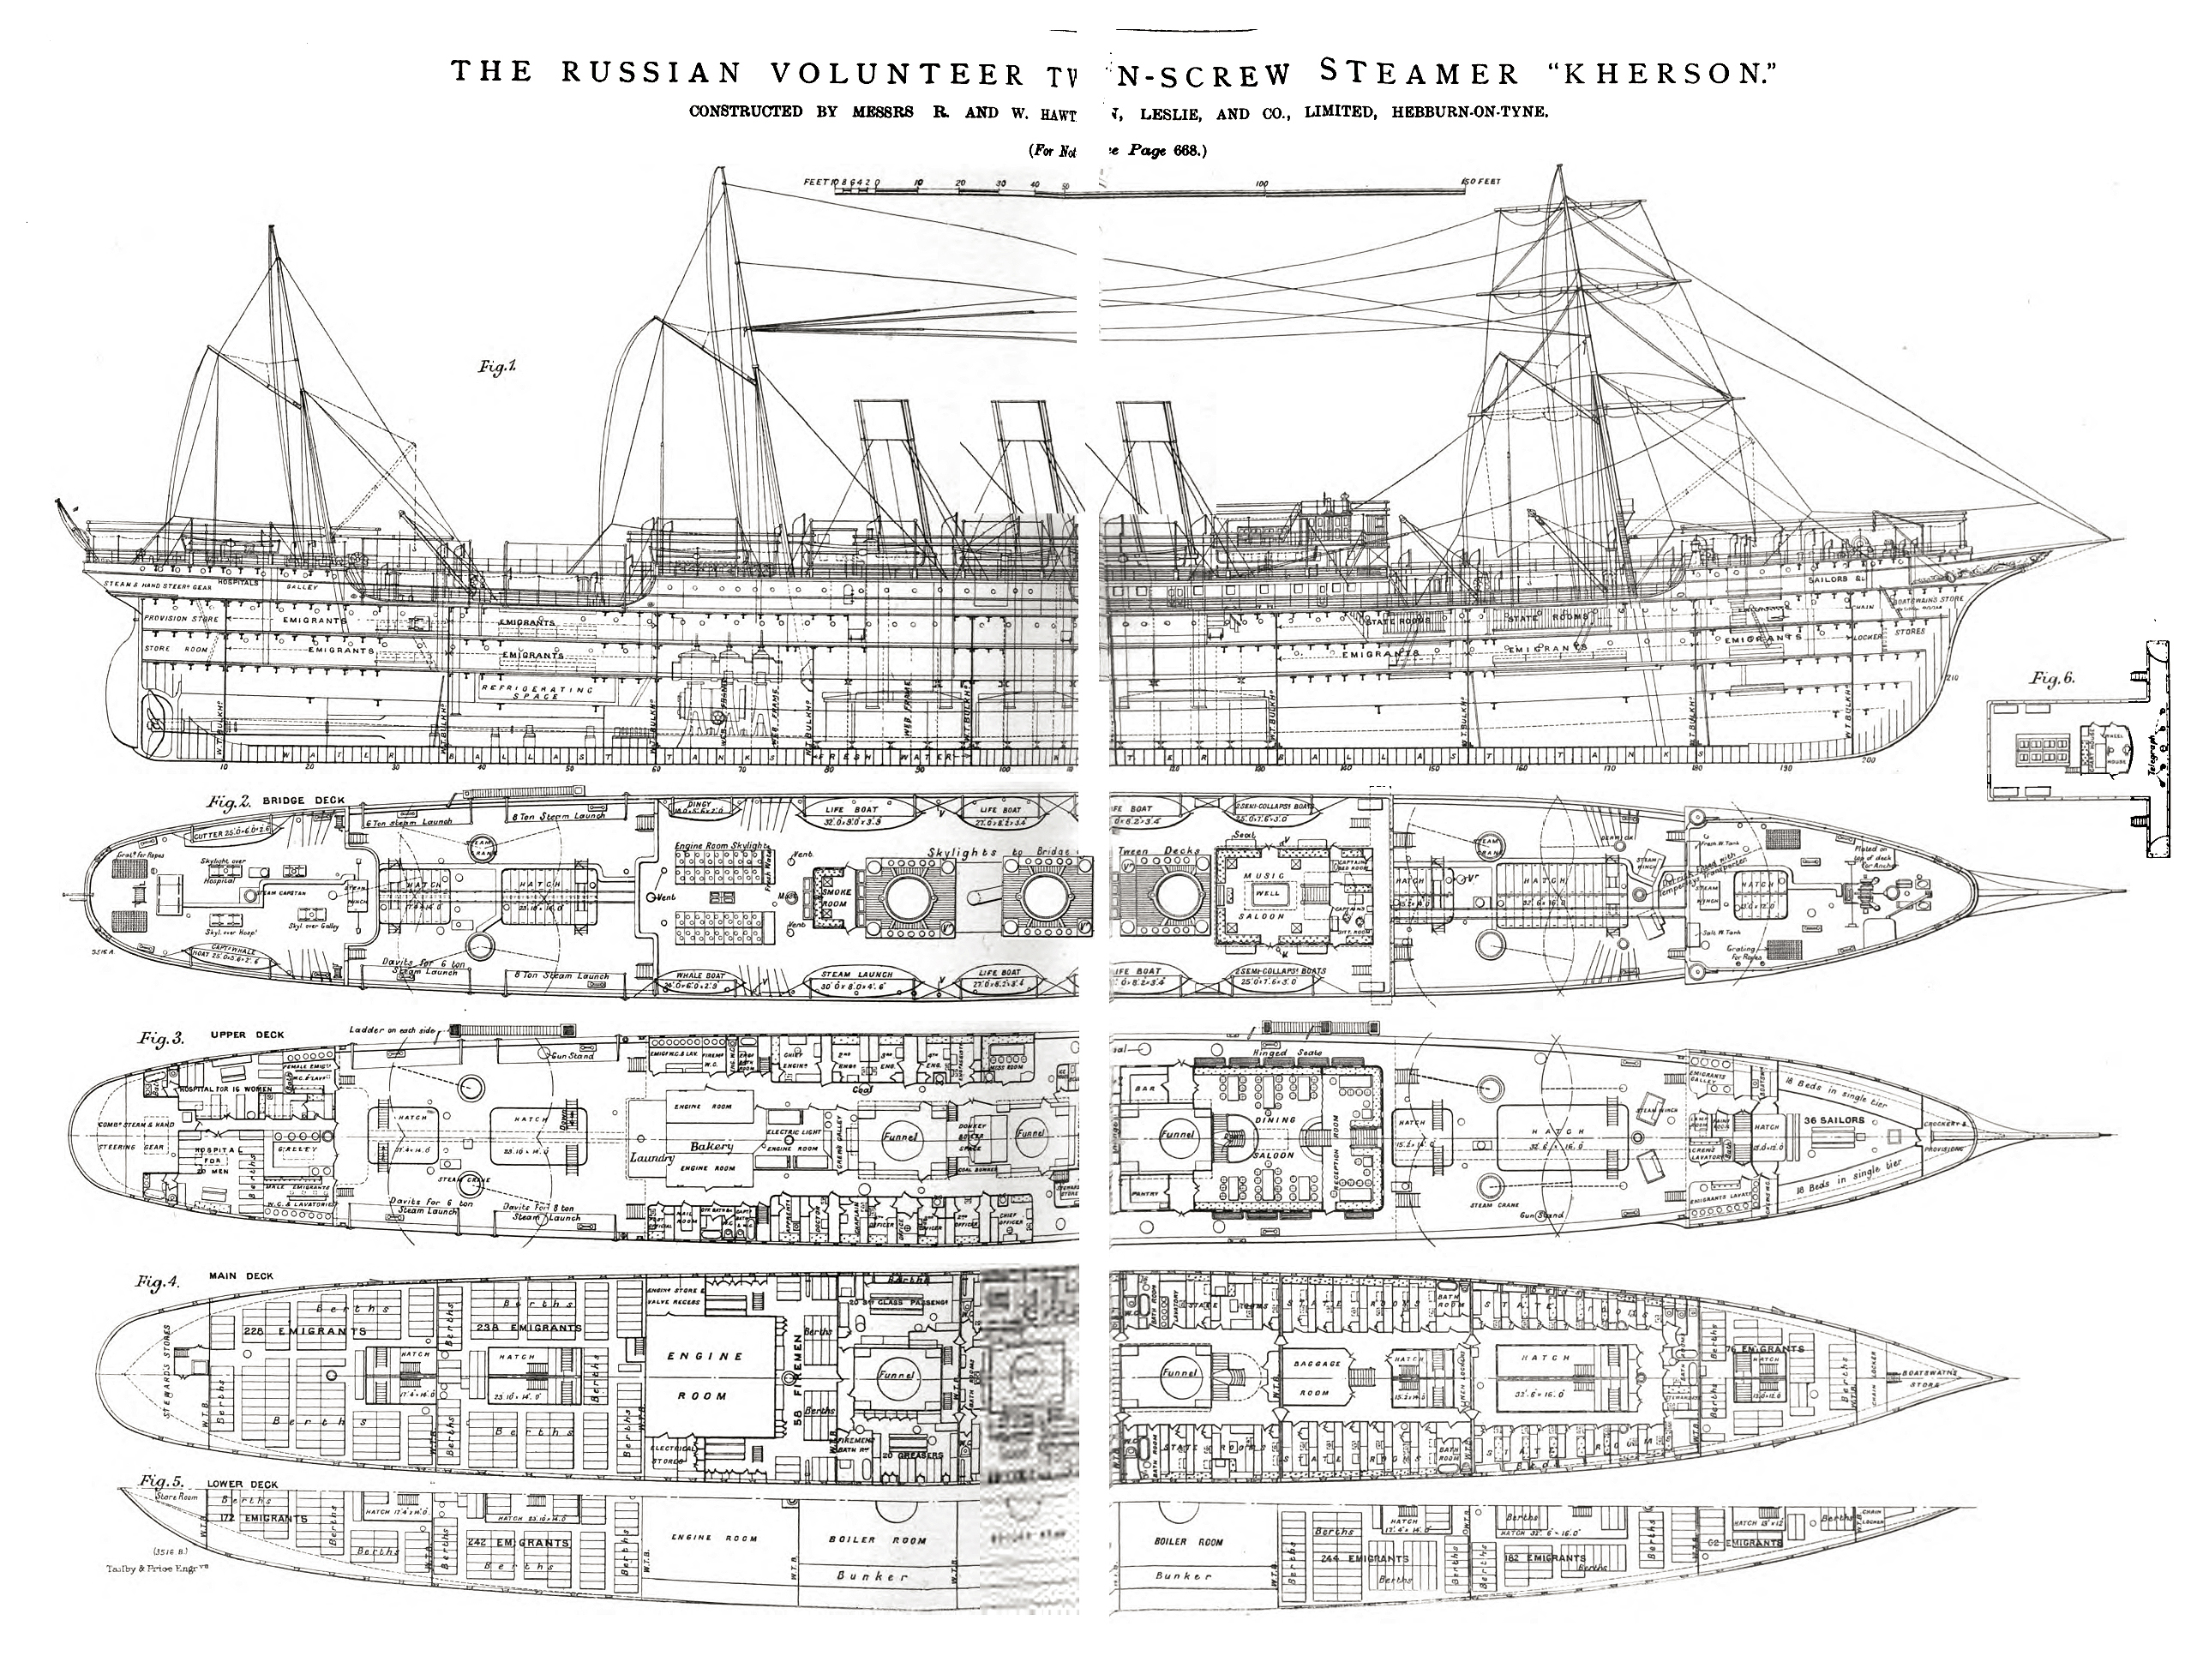 Размер парохода. Вспомогательный крейсер Ангара чертежи. Вспомогательный крейсер Лена 1904. Пароход-крейсер «Ангара» чертёж. Вспомогательный крейсер Ангара 1904г.